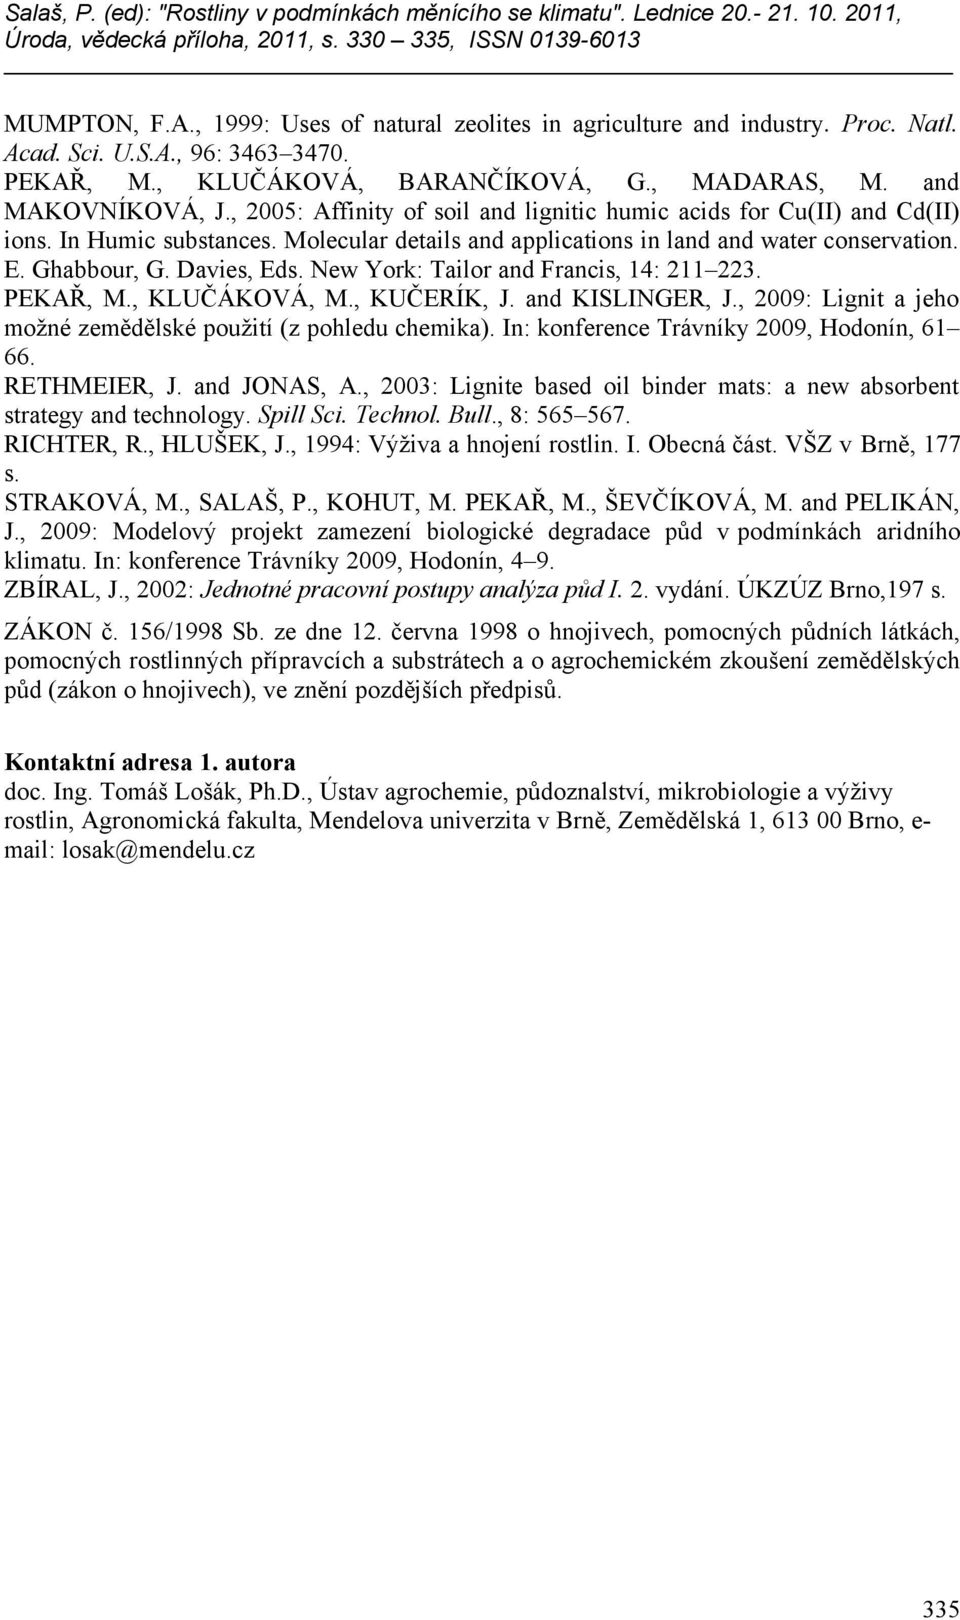 New York: Tailor and Francis, 14: 211 223. PEKAŘ, M., KLUČÁKOVÁ, M., KUČERÍK, J. and KISLINGER, J., 2009: Lignit a jeho možné zemědělské použití (z pohledu chemika).